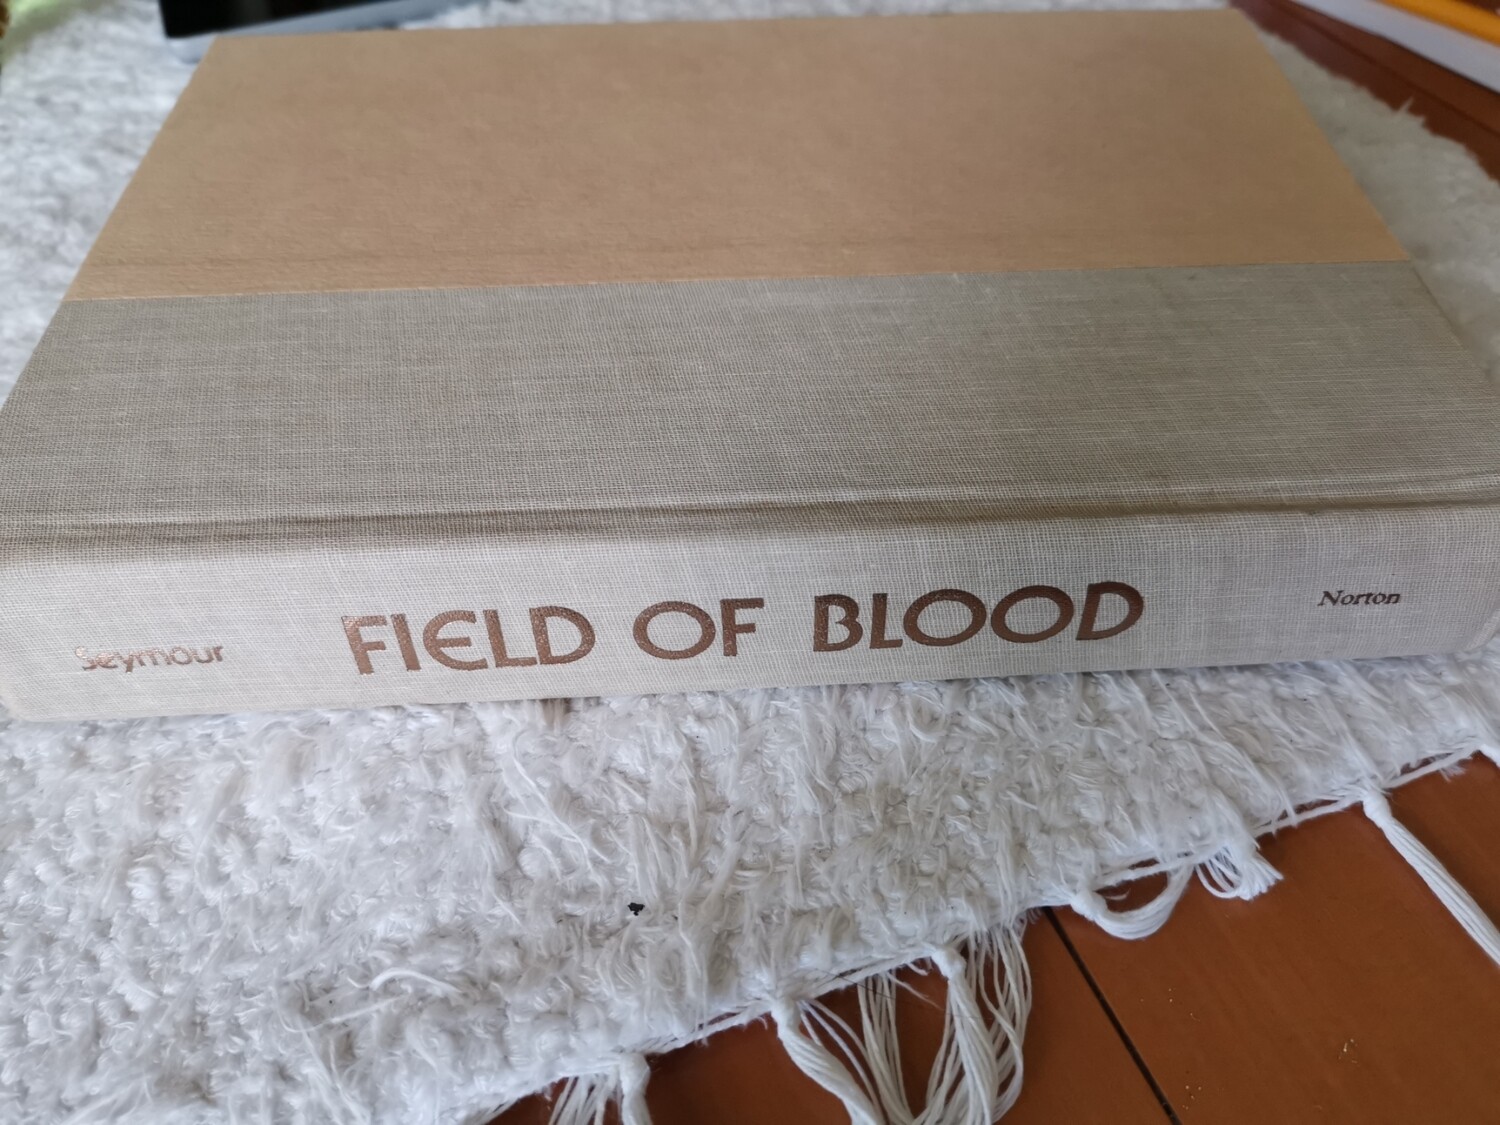 Field of blood, Gerald Seymour